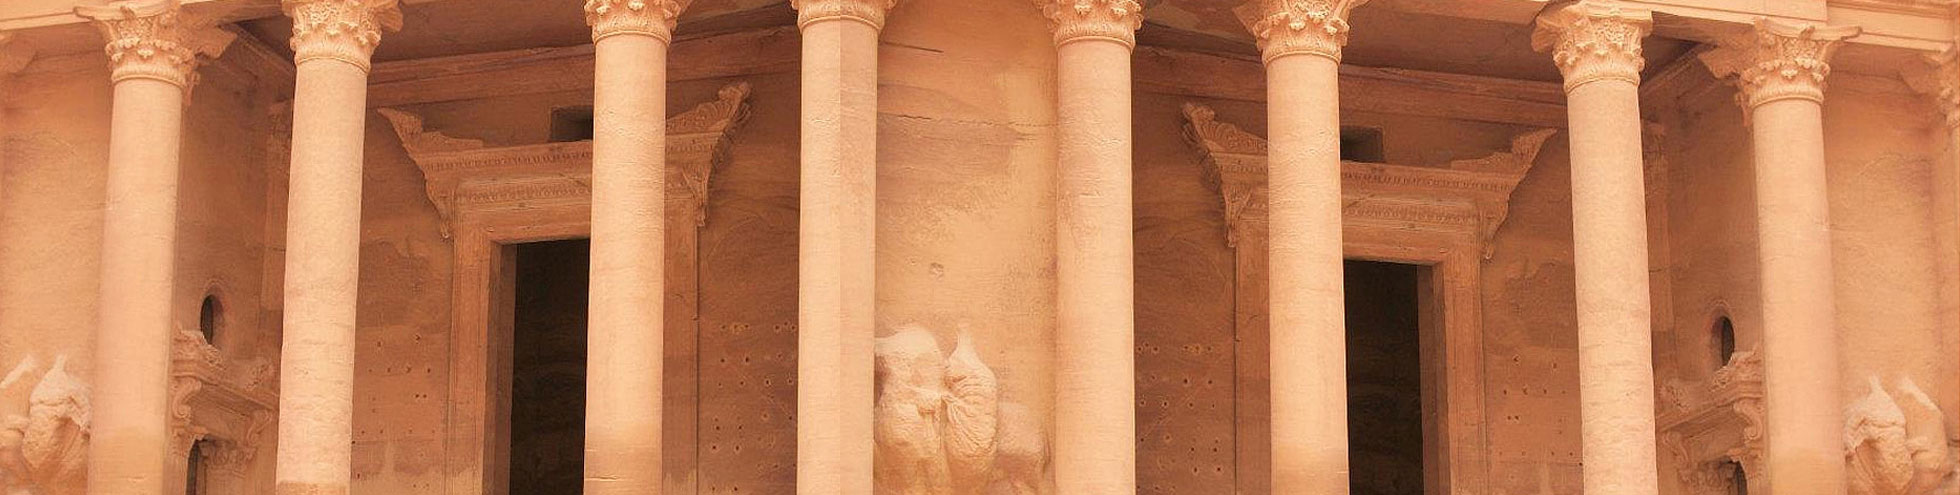 Petra - Jordan Tours